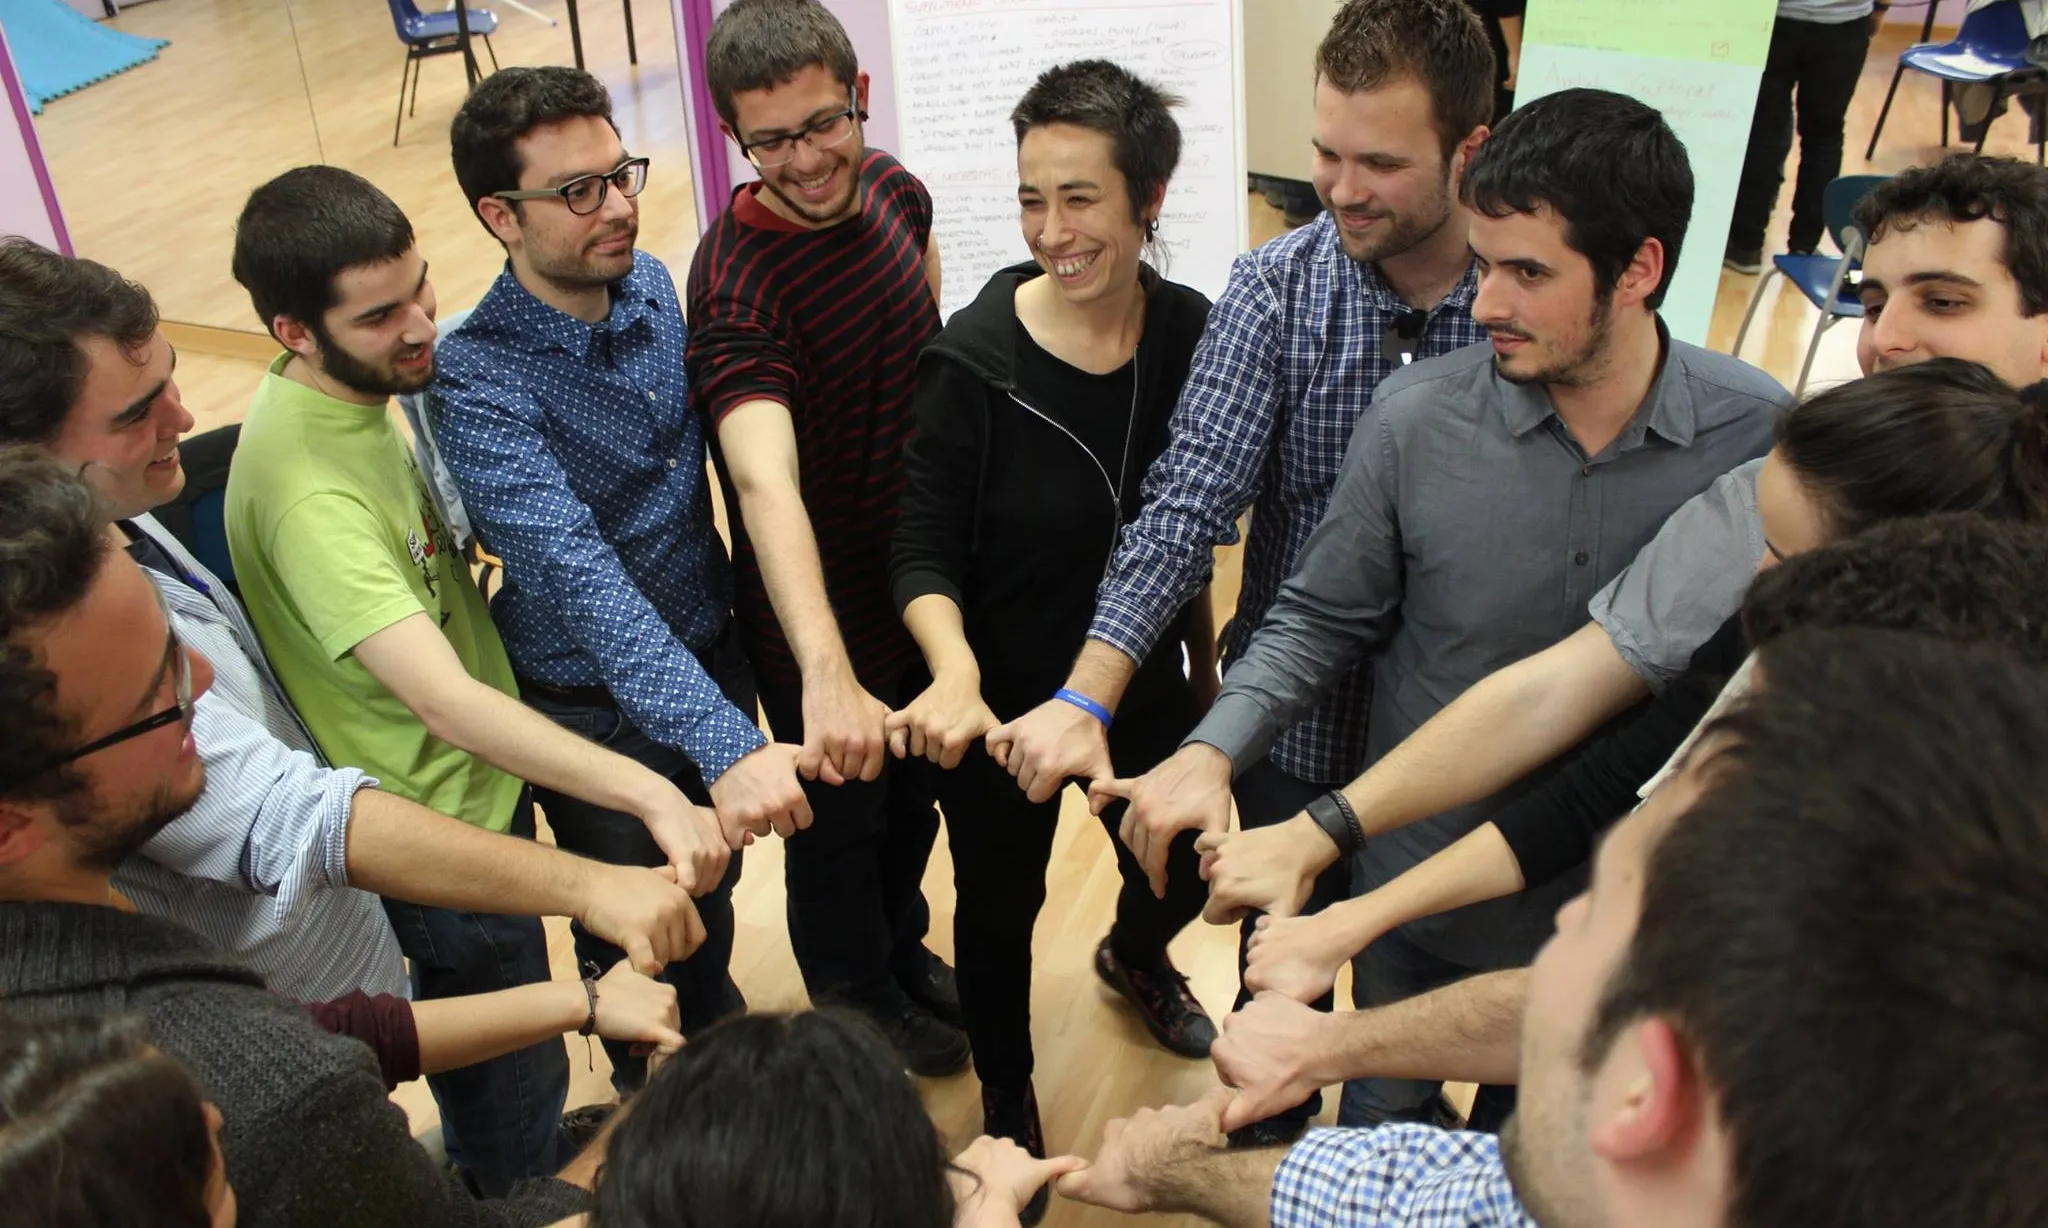 Joves en una rotllana posant les mans al centre en una activitat de la 10a Àgora Jove, posant 